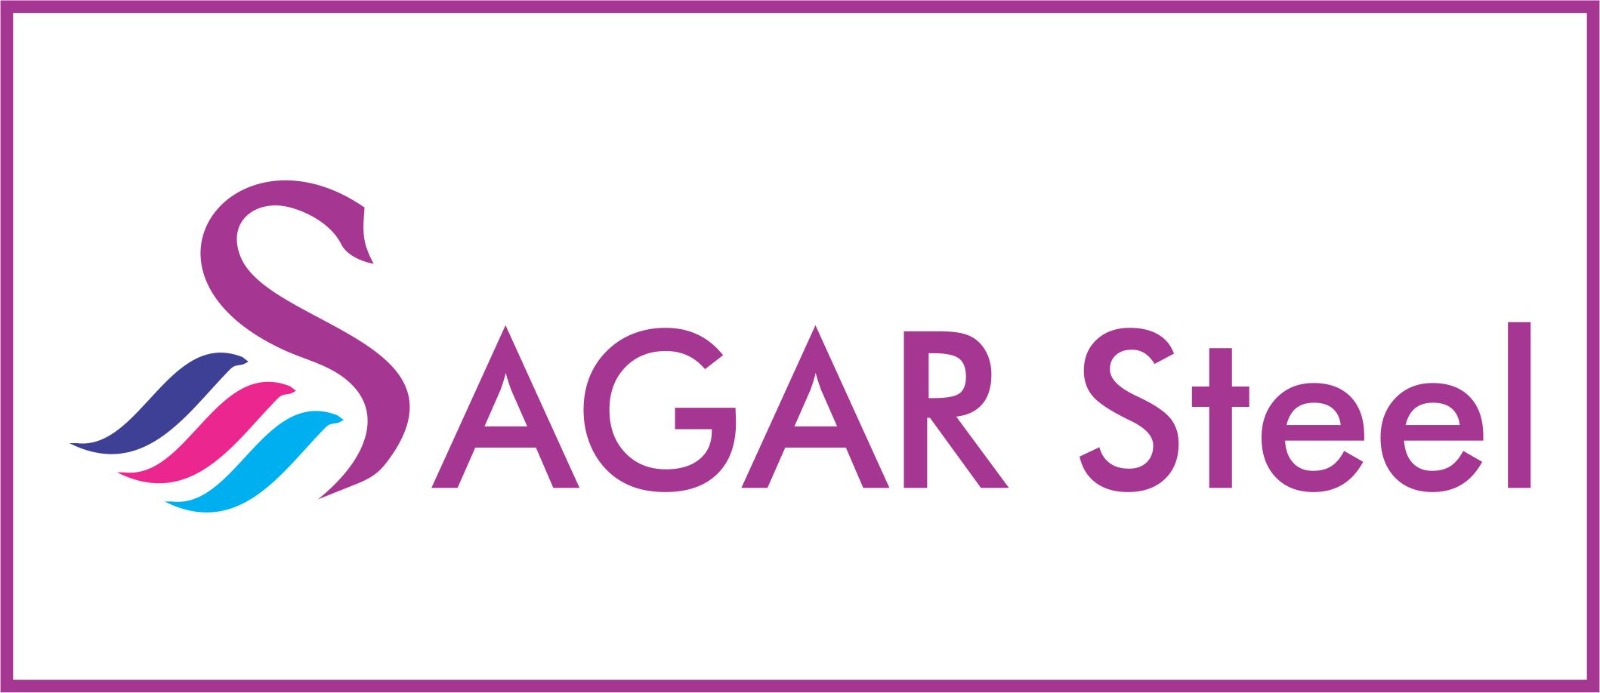 Sagar Steel